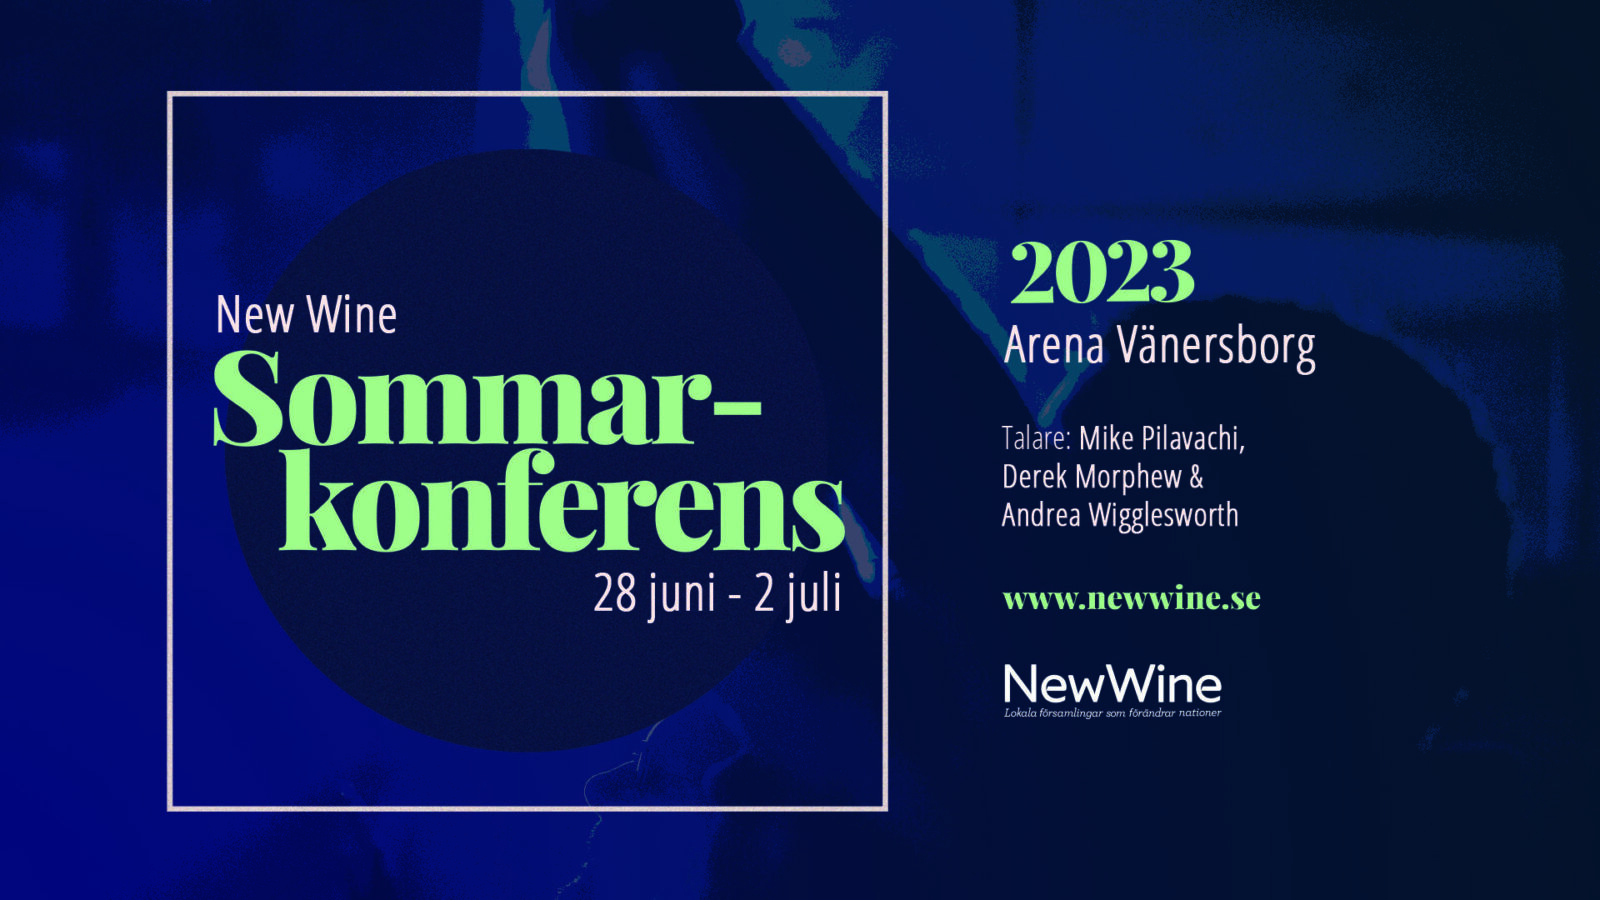 New Wine sommarkonferens 2023 - storbild